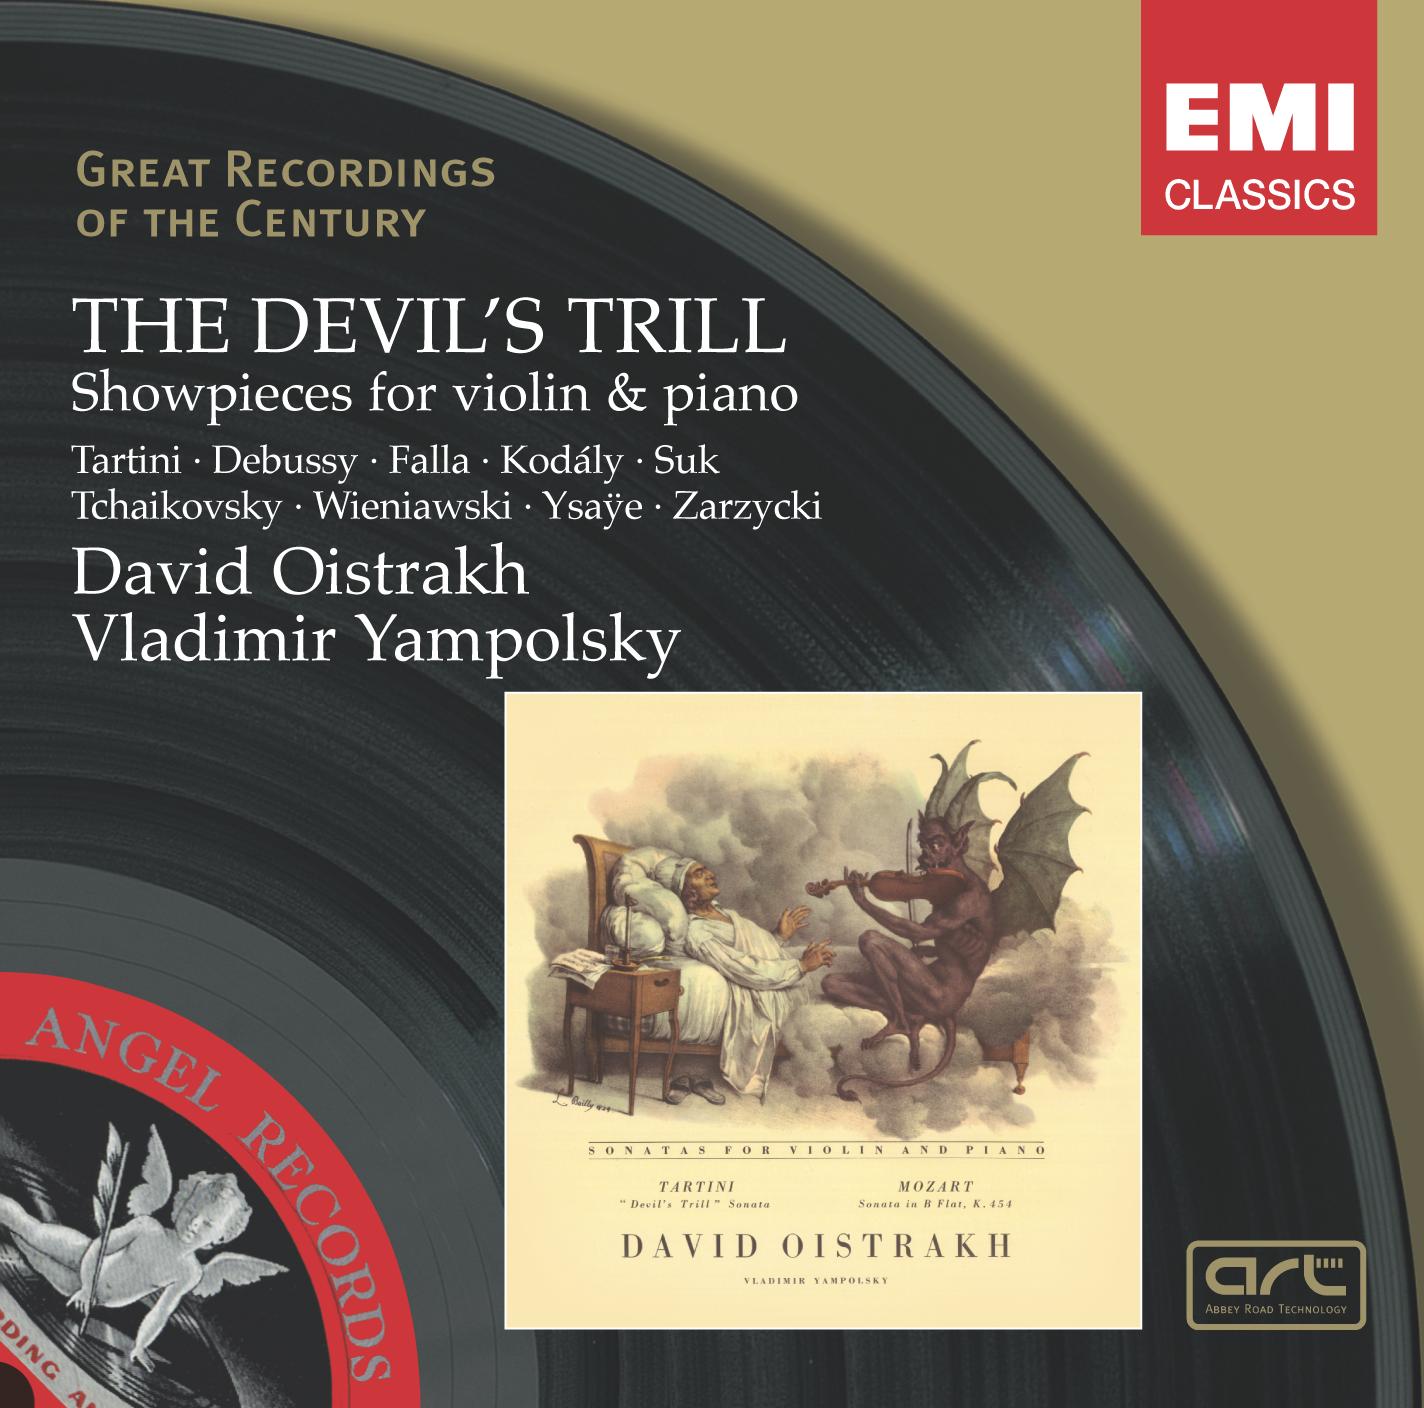 The Devil's Trill - Showpieces / Oistrakh, Yampolsky